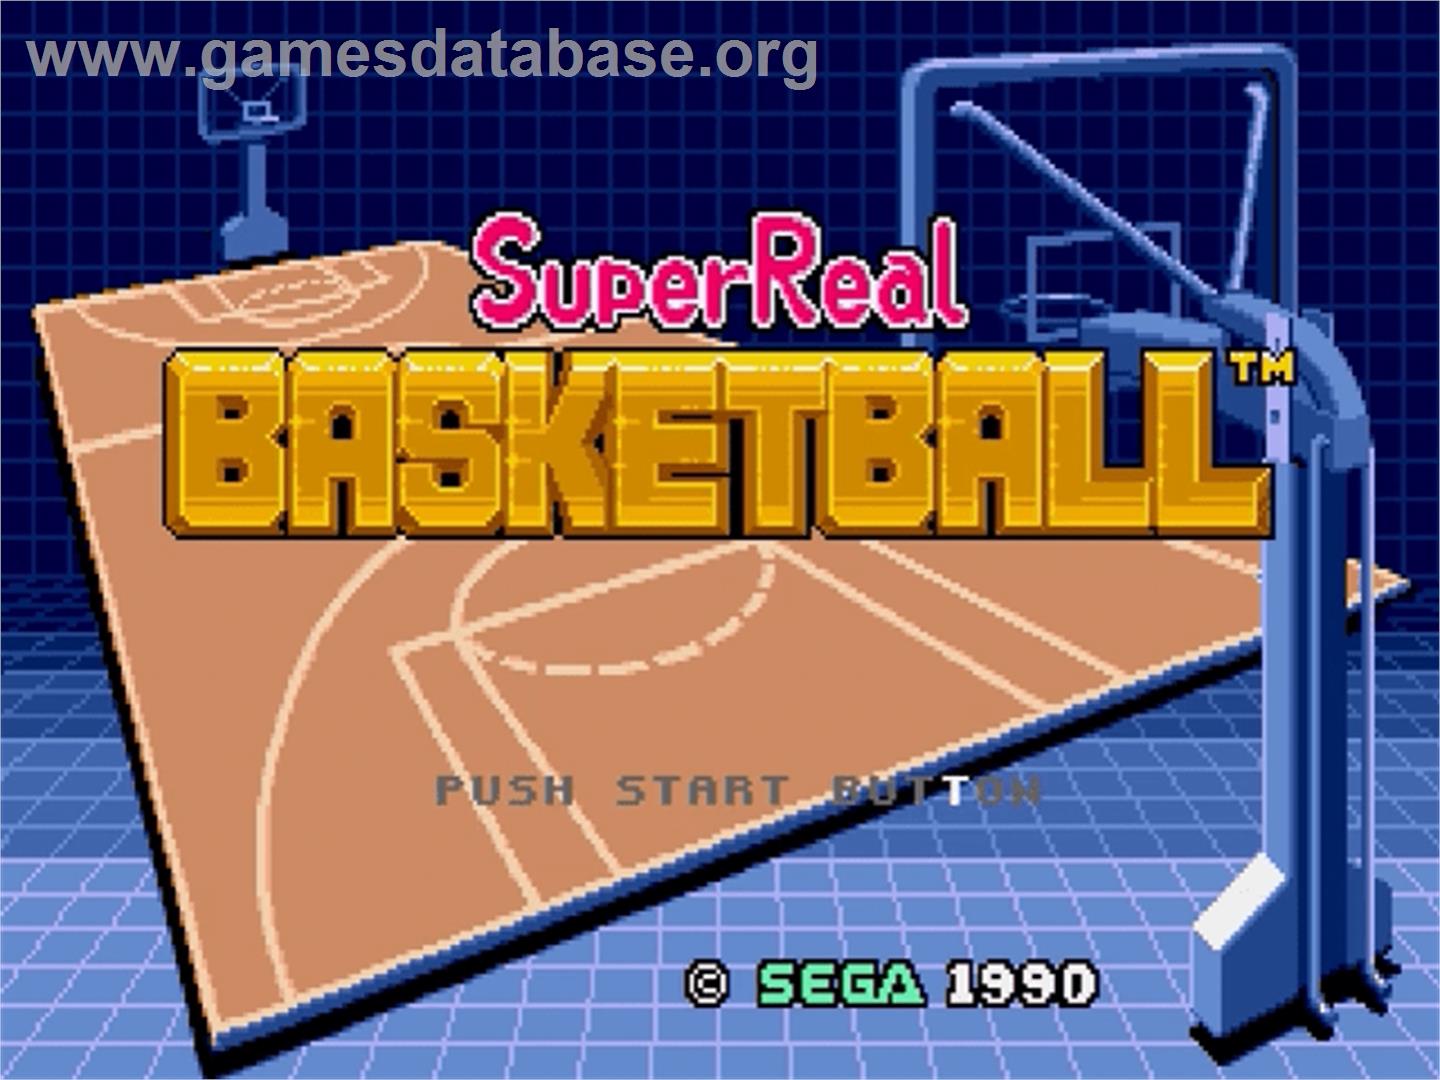 Super Real Basketball - Sega Genesis - Artwork - Title Screen